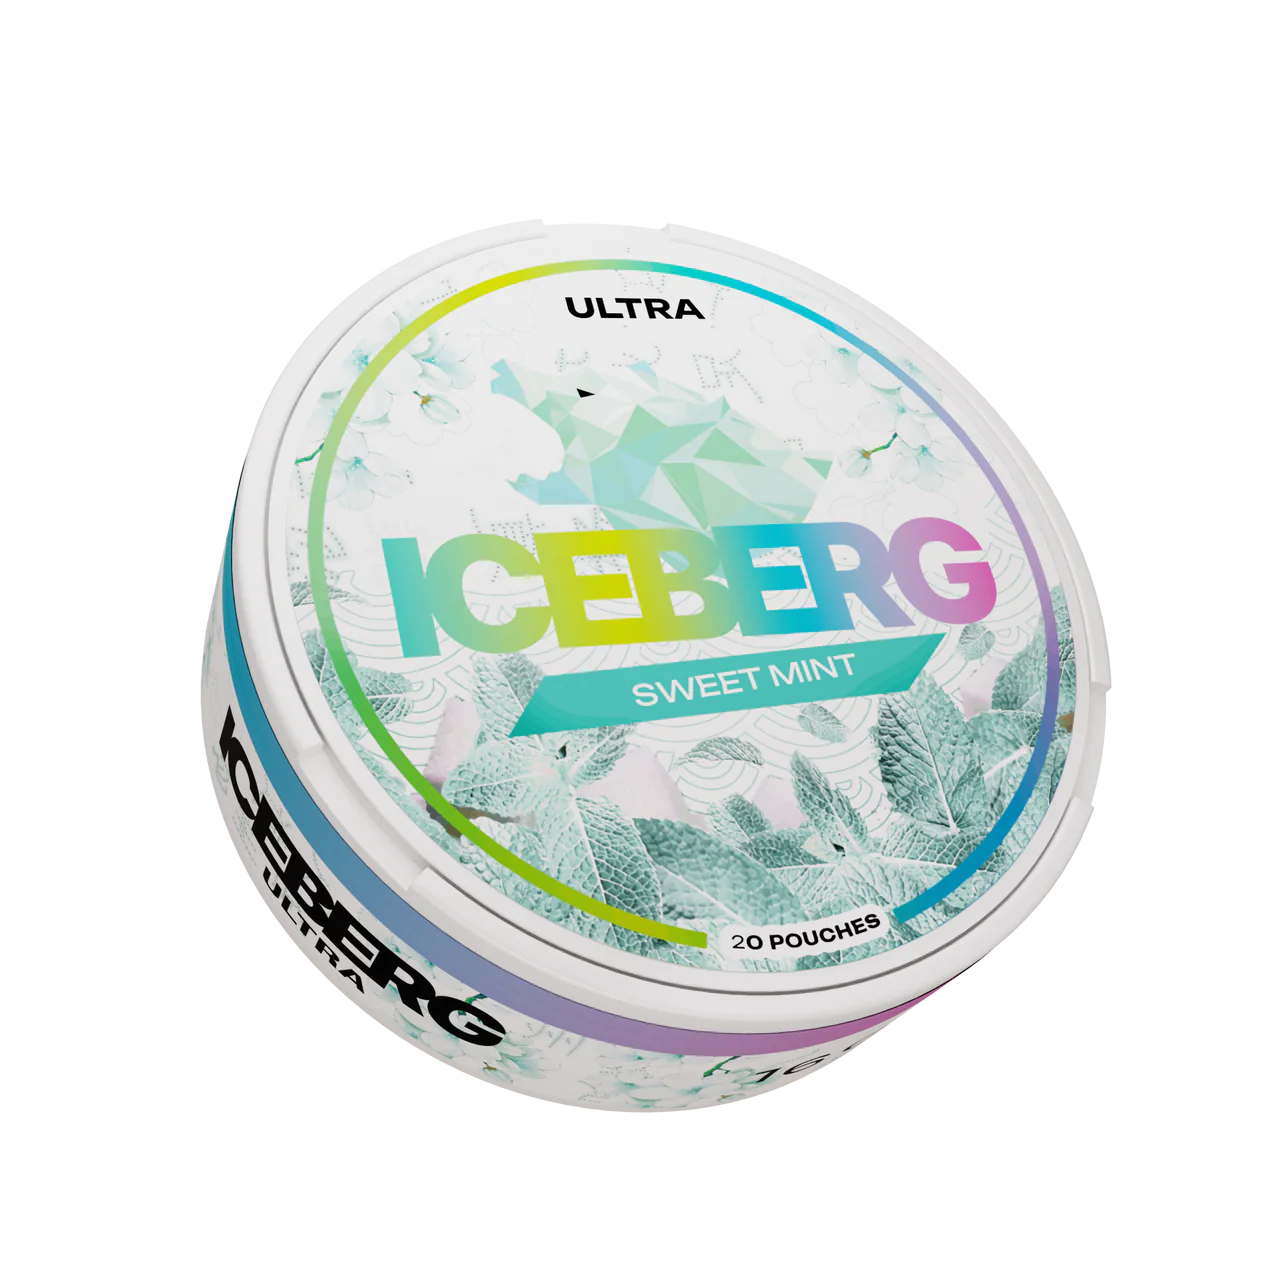 IceBerg Sweet Mint